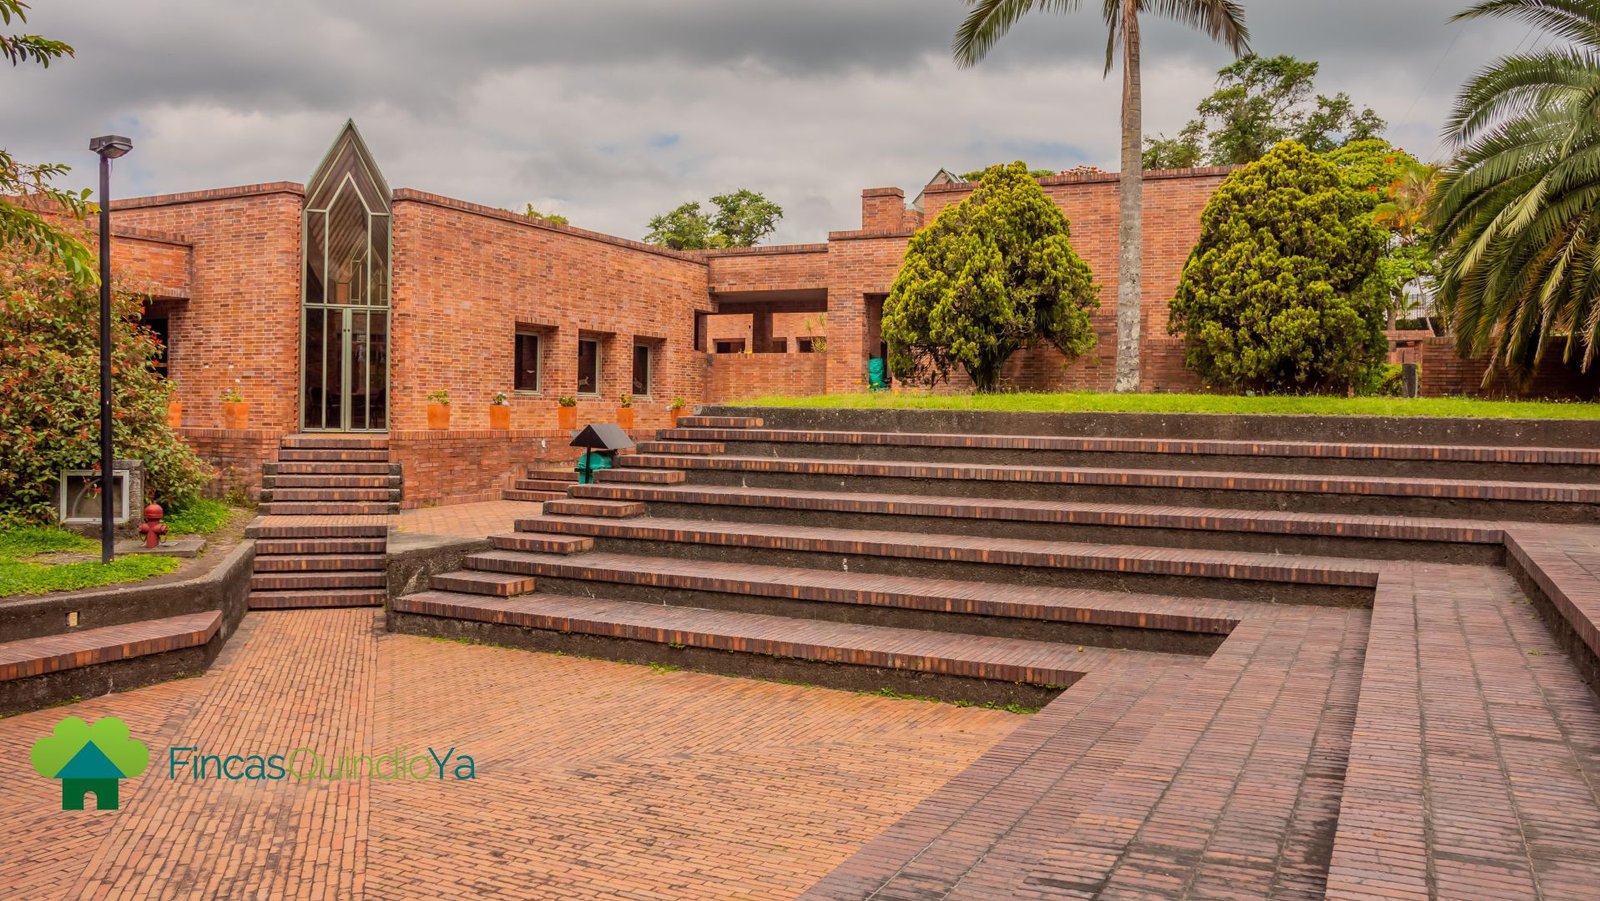 Escaleras en forma de cuadro y arboles alrededor en el Museo del Oro Quimbaya